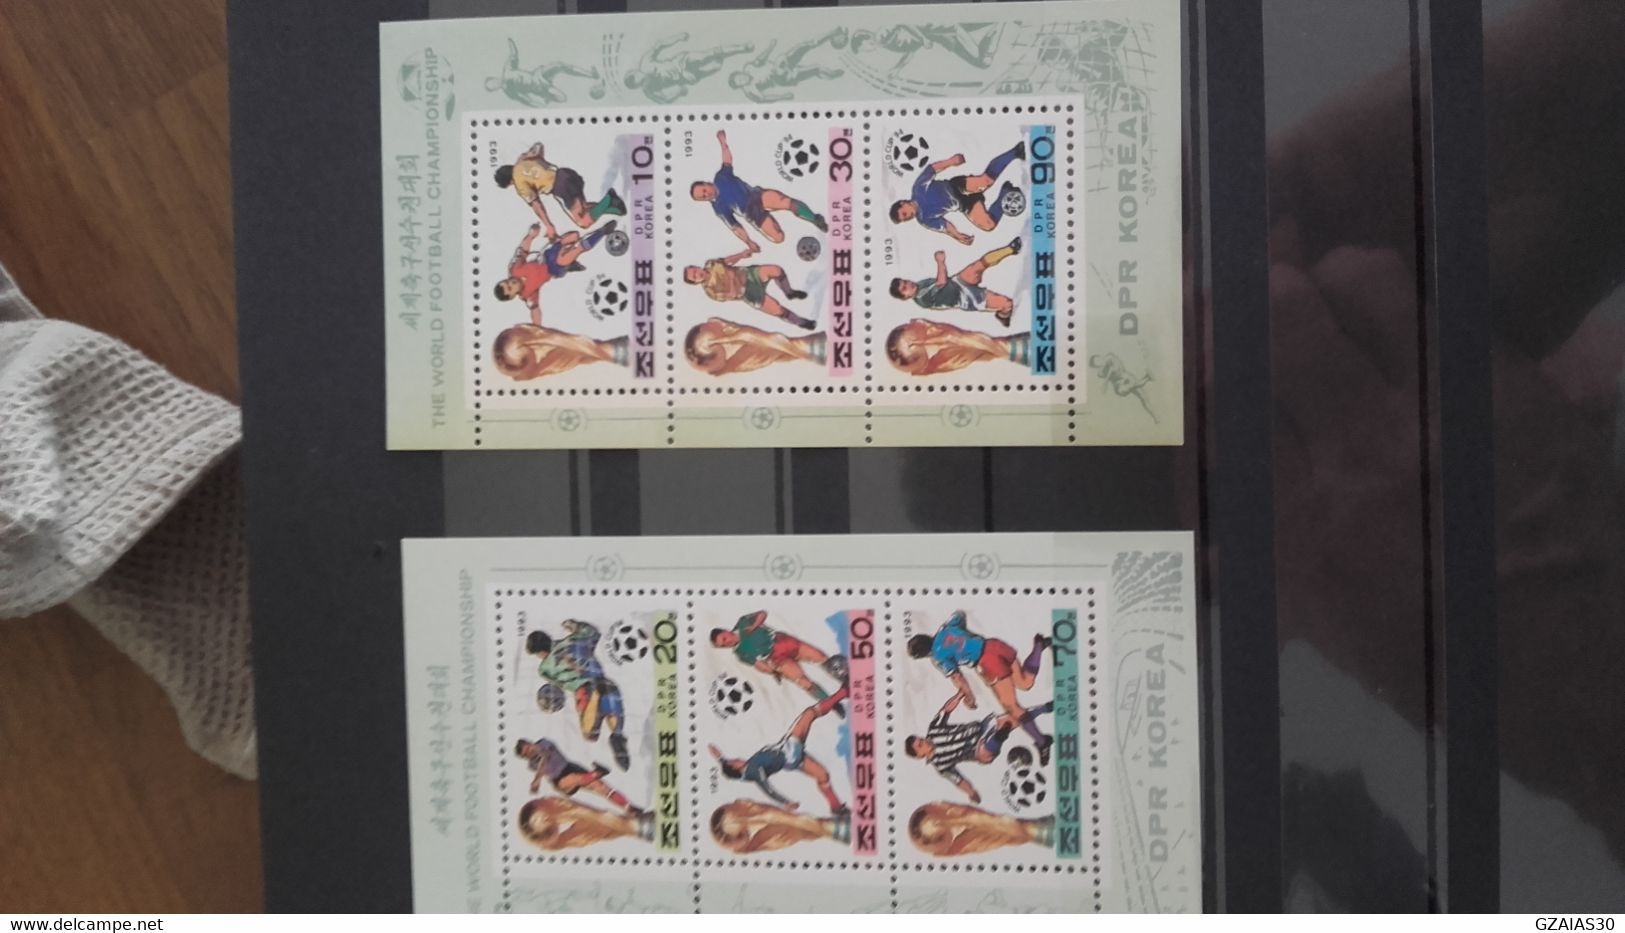 monde lot de 1000 timbres sur le thème du football